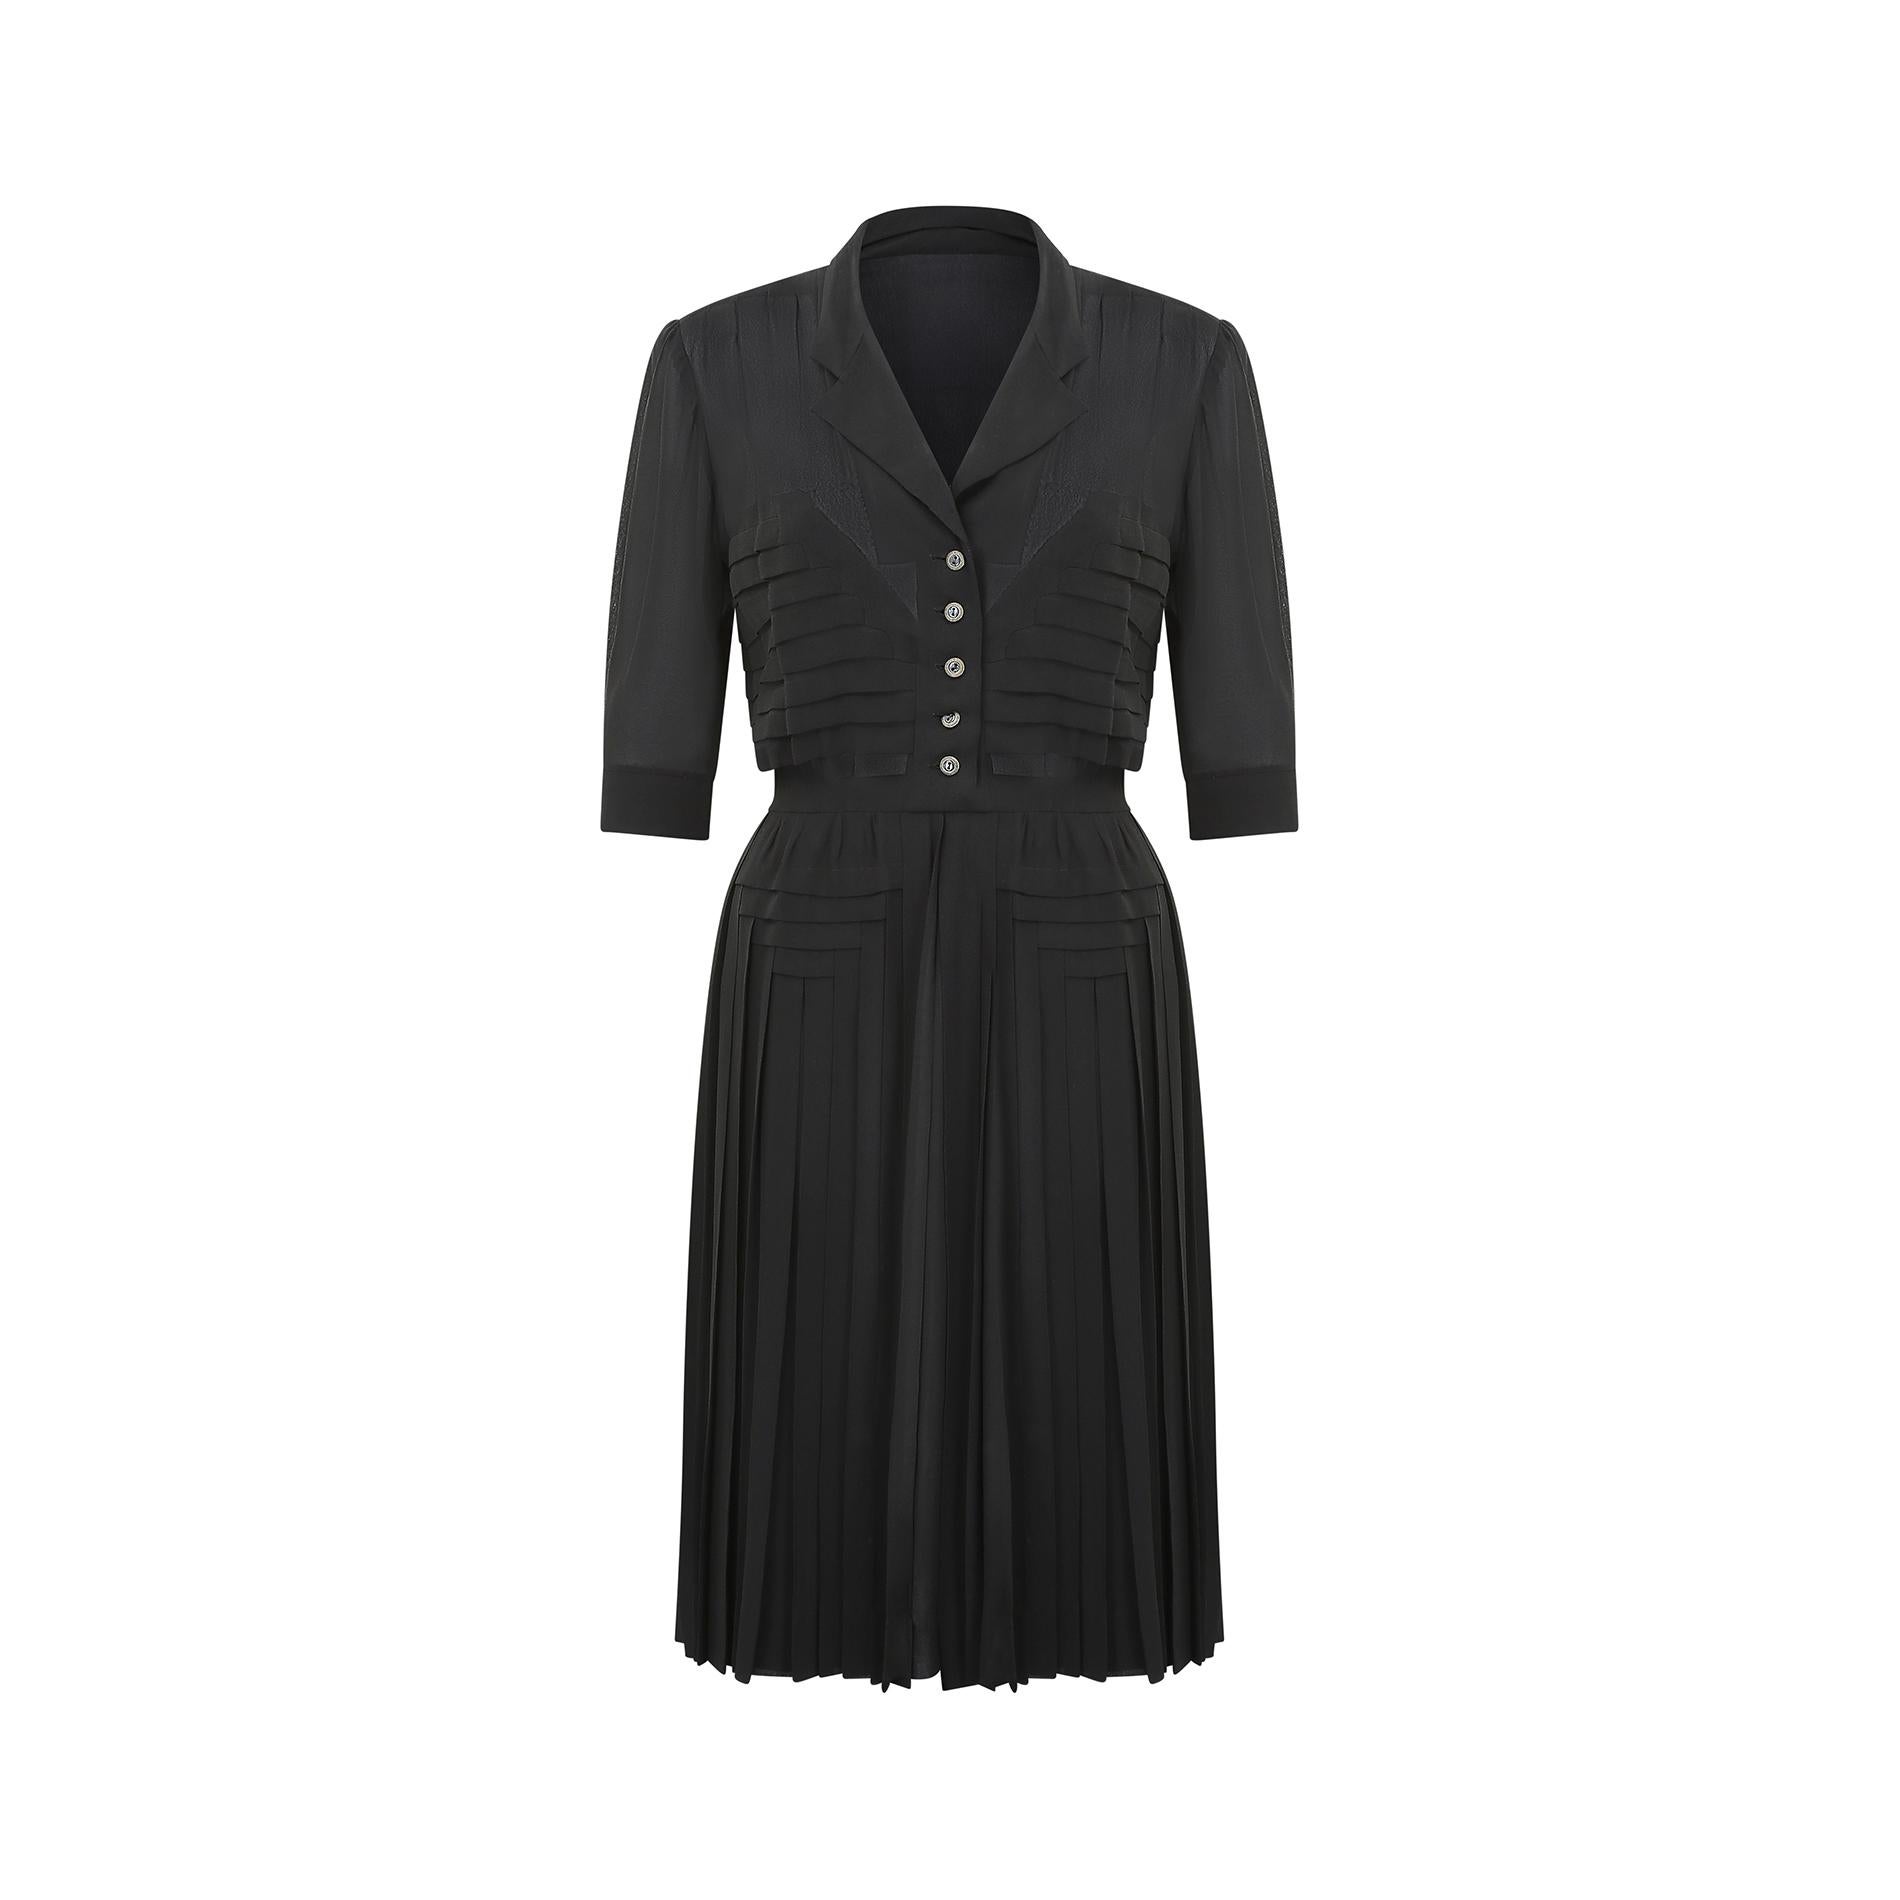 Hervorragendes französisches Haute-Couture-Kleid aus schwarzer Seide, das mit ziemlicher Sicherheit während oder kurz nach dem Zweiten Weltkrieg (1939-1947) hergestellt wurde.  Es hat einen V-Ausschnitt mit dezenter Einkerbung und wird auf der